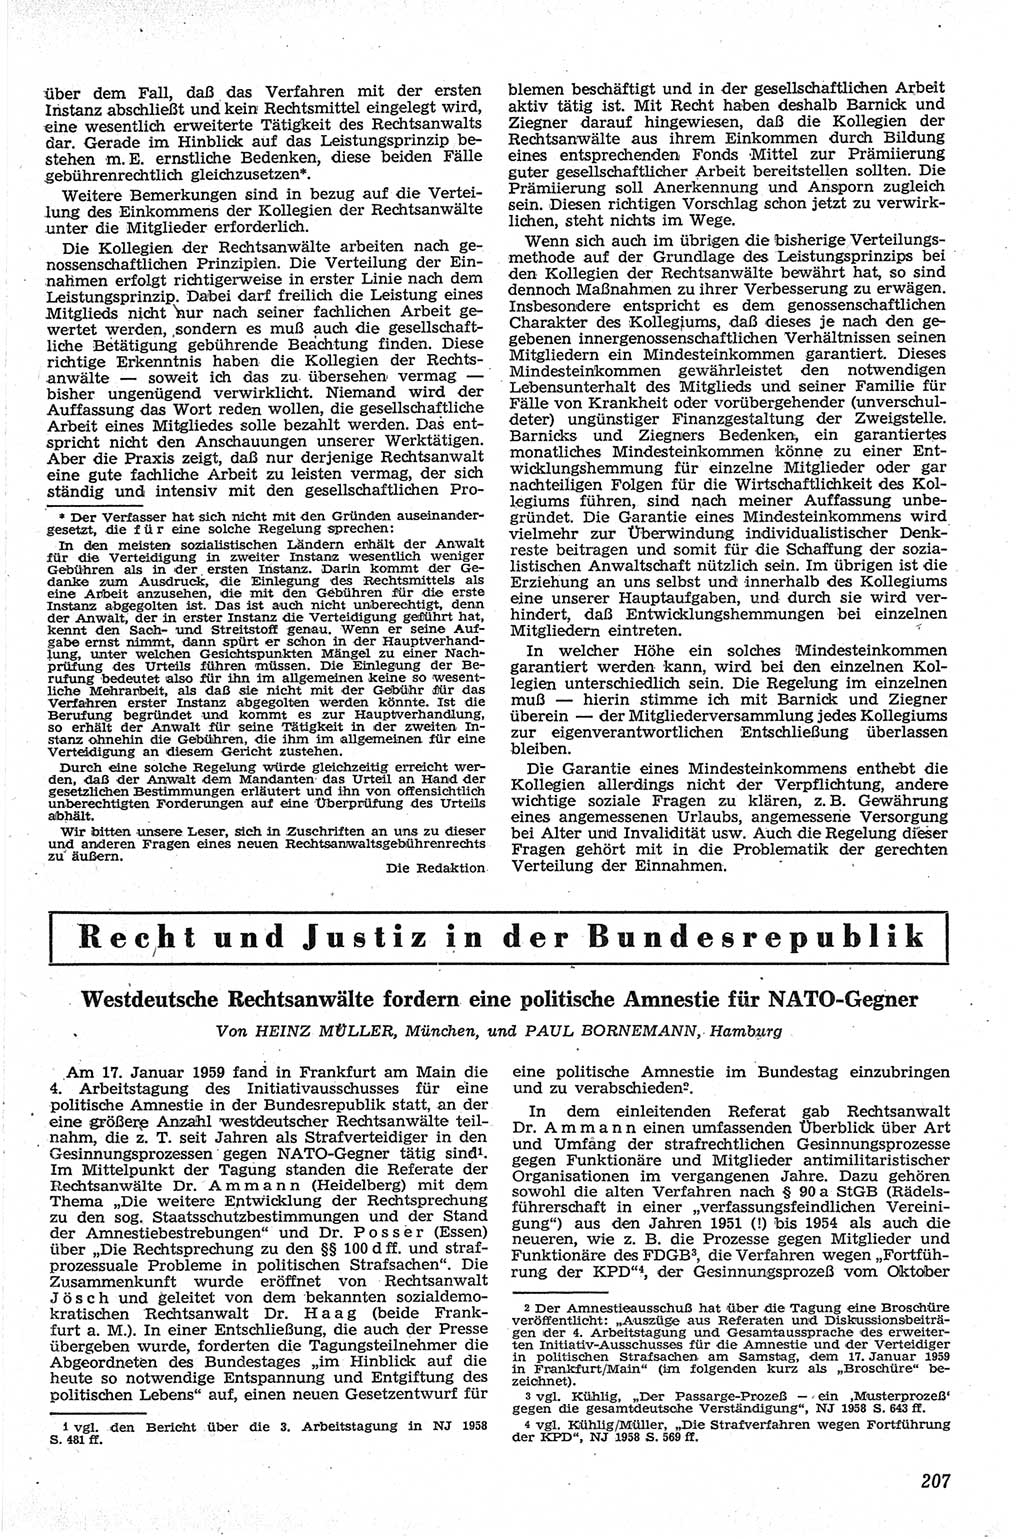 Neue Justiz (NJ), Zeitschrift für Recht und Rechtswissenschaft [Deutsche Demokratische Republik (DDR)], 13. Jahrgang 1959, Seite 207 (NJ DDR 1959, S. 207)